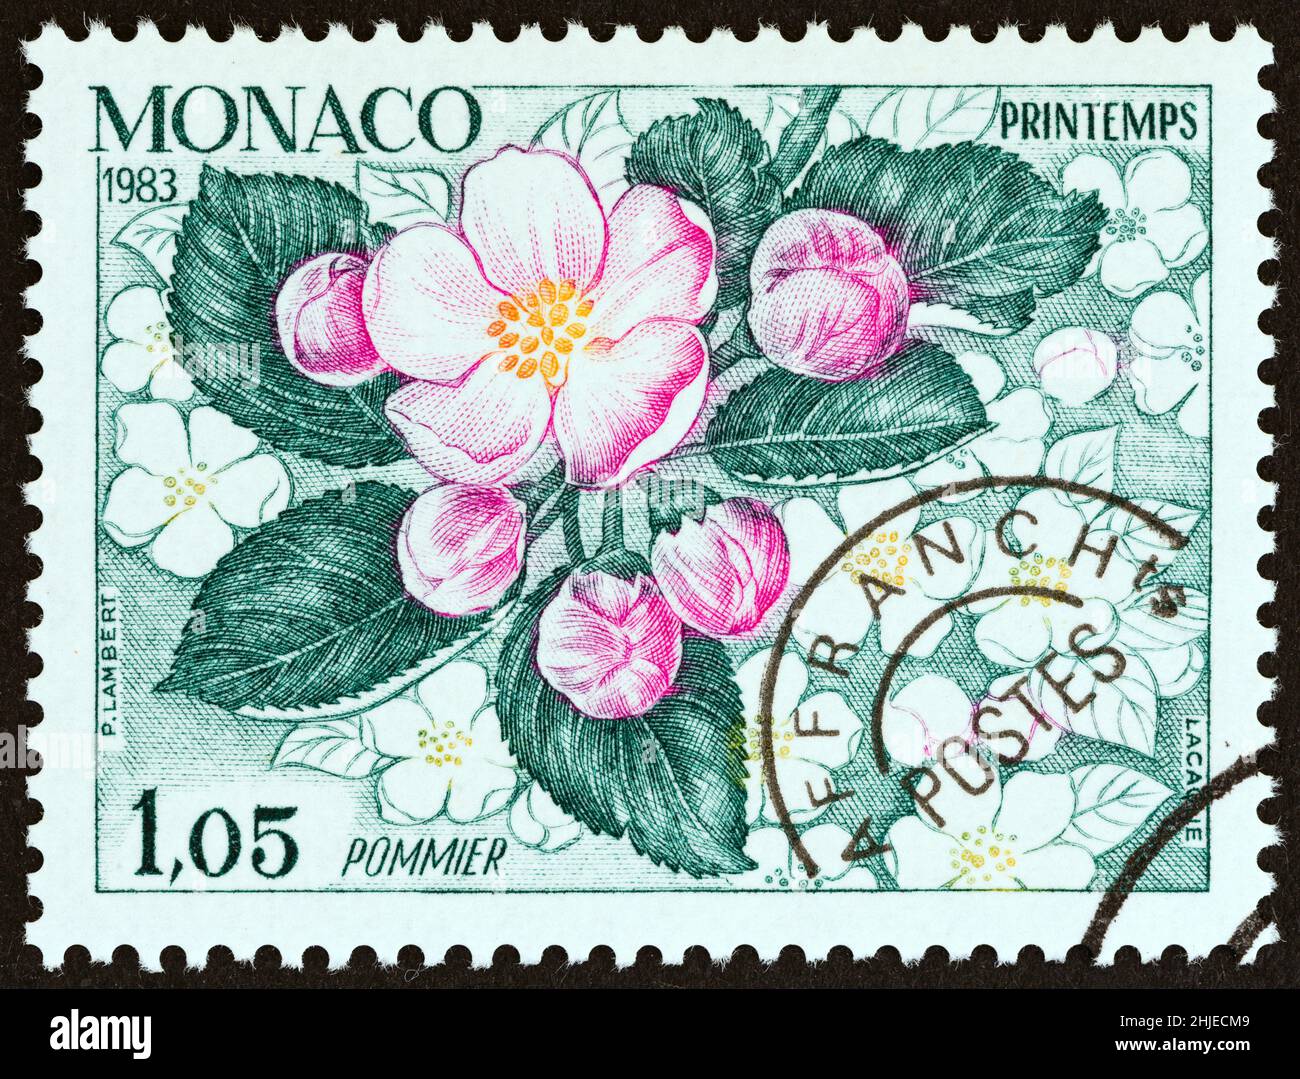 MONACO - VERS 1983 : un timbre imprimé à Monaco du numéro « les quatre saisons de l'Apple Tree » indique le printemps, vers 1983. Banque D'Images